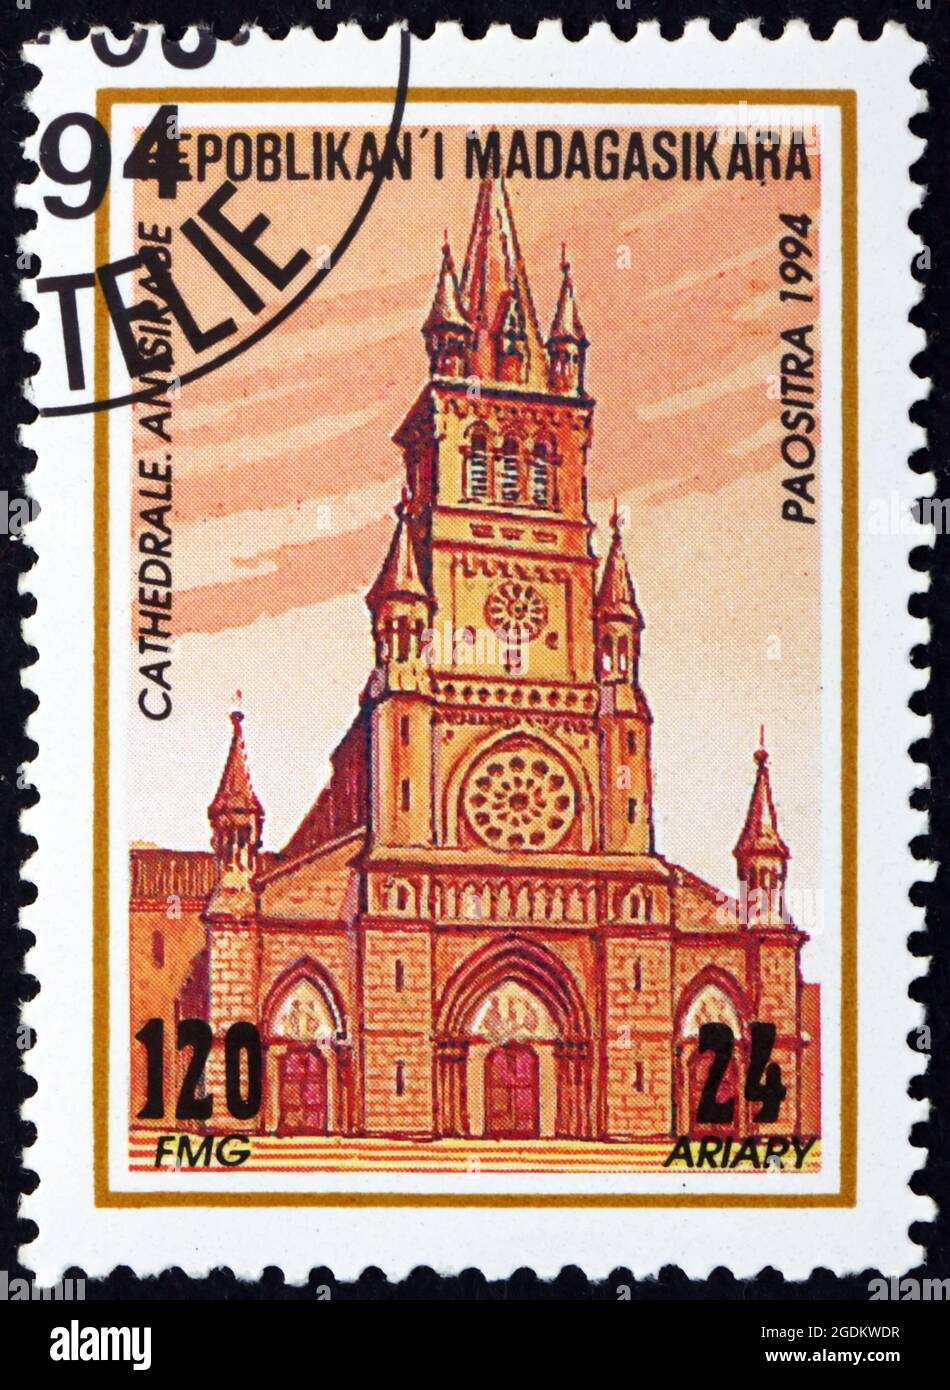 MALGACHE - VERS 1994: Un timbre imprimé à Malgache, Madagascar montre la cathédrale d'Antsirabe, la cathédrale notre-Dame de la Salette, vers 1994 Banque D'Images